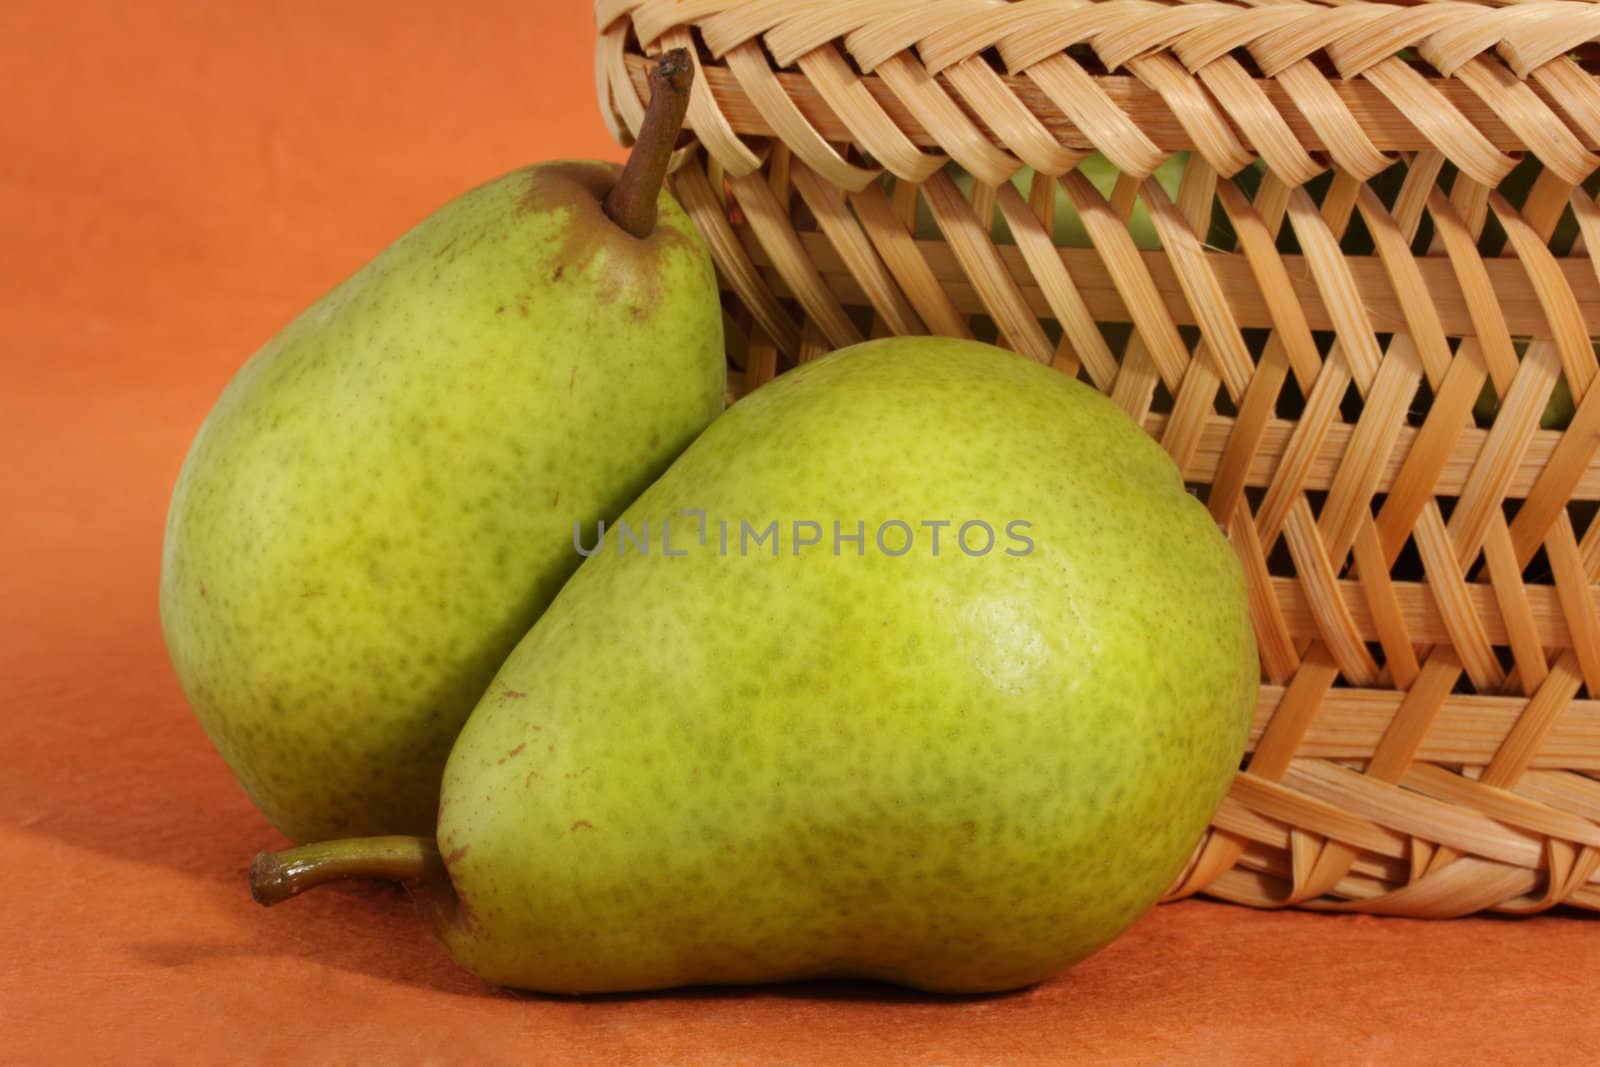 two bartlett pears near a wicker basket